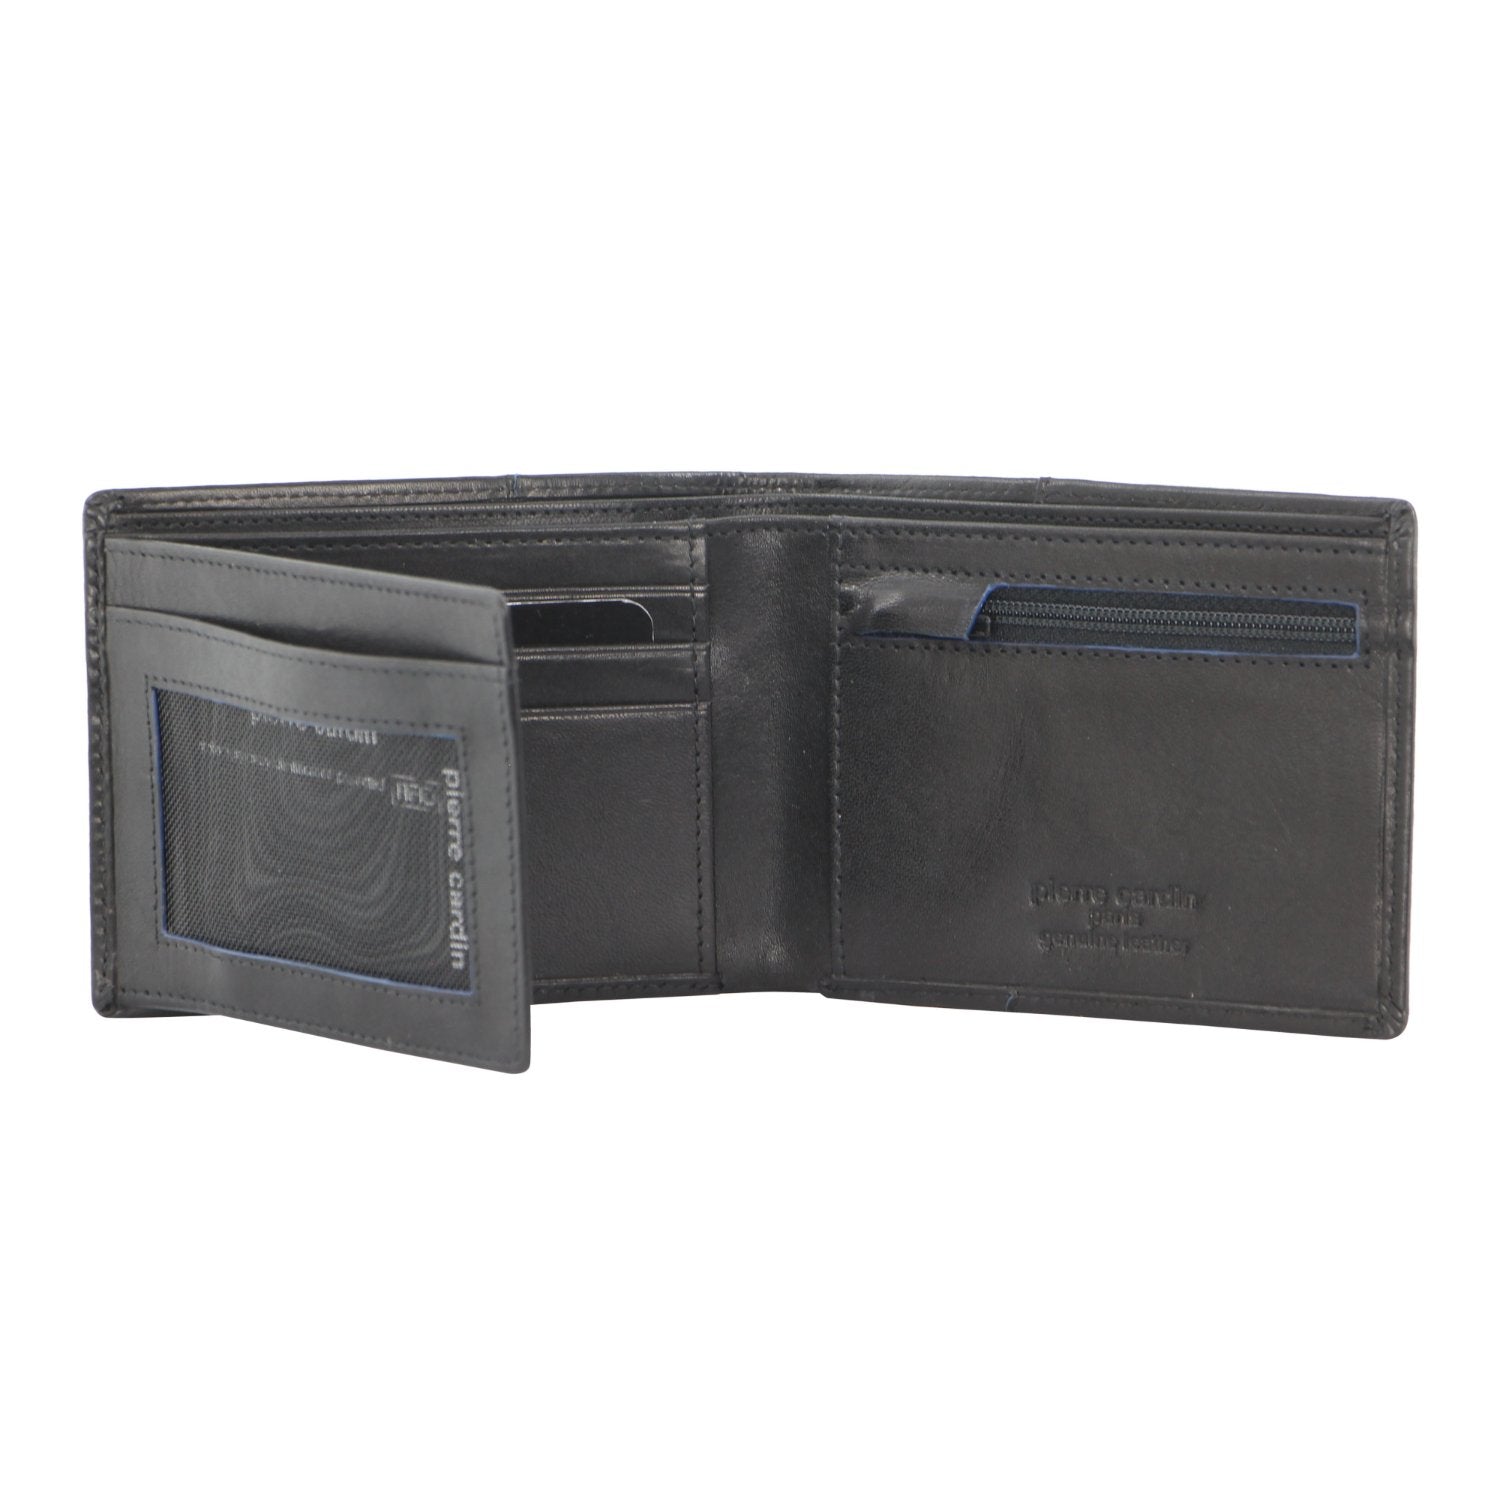 Pierre Cardin Leather Men's Bi-Fold Wallet in Cognac